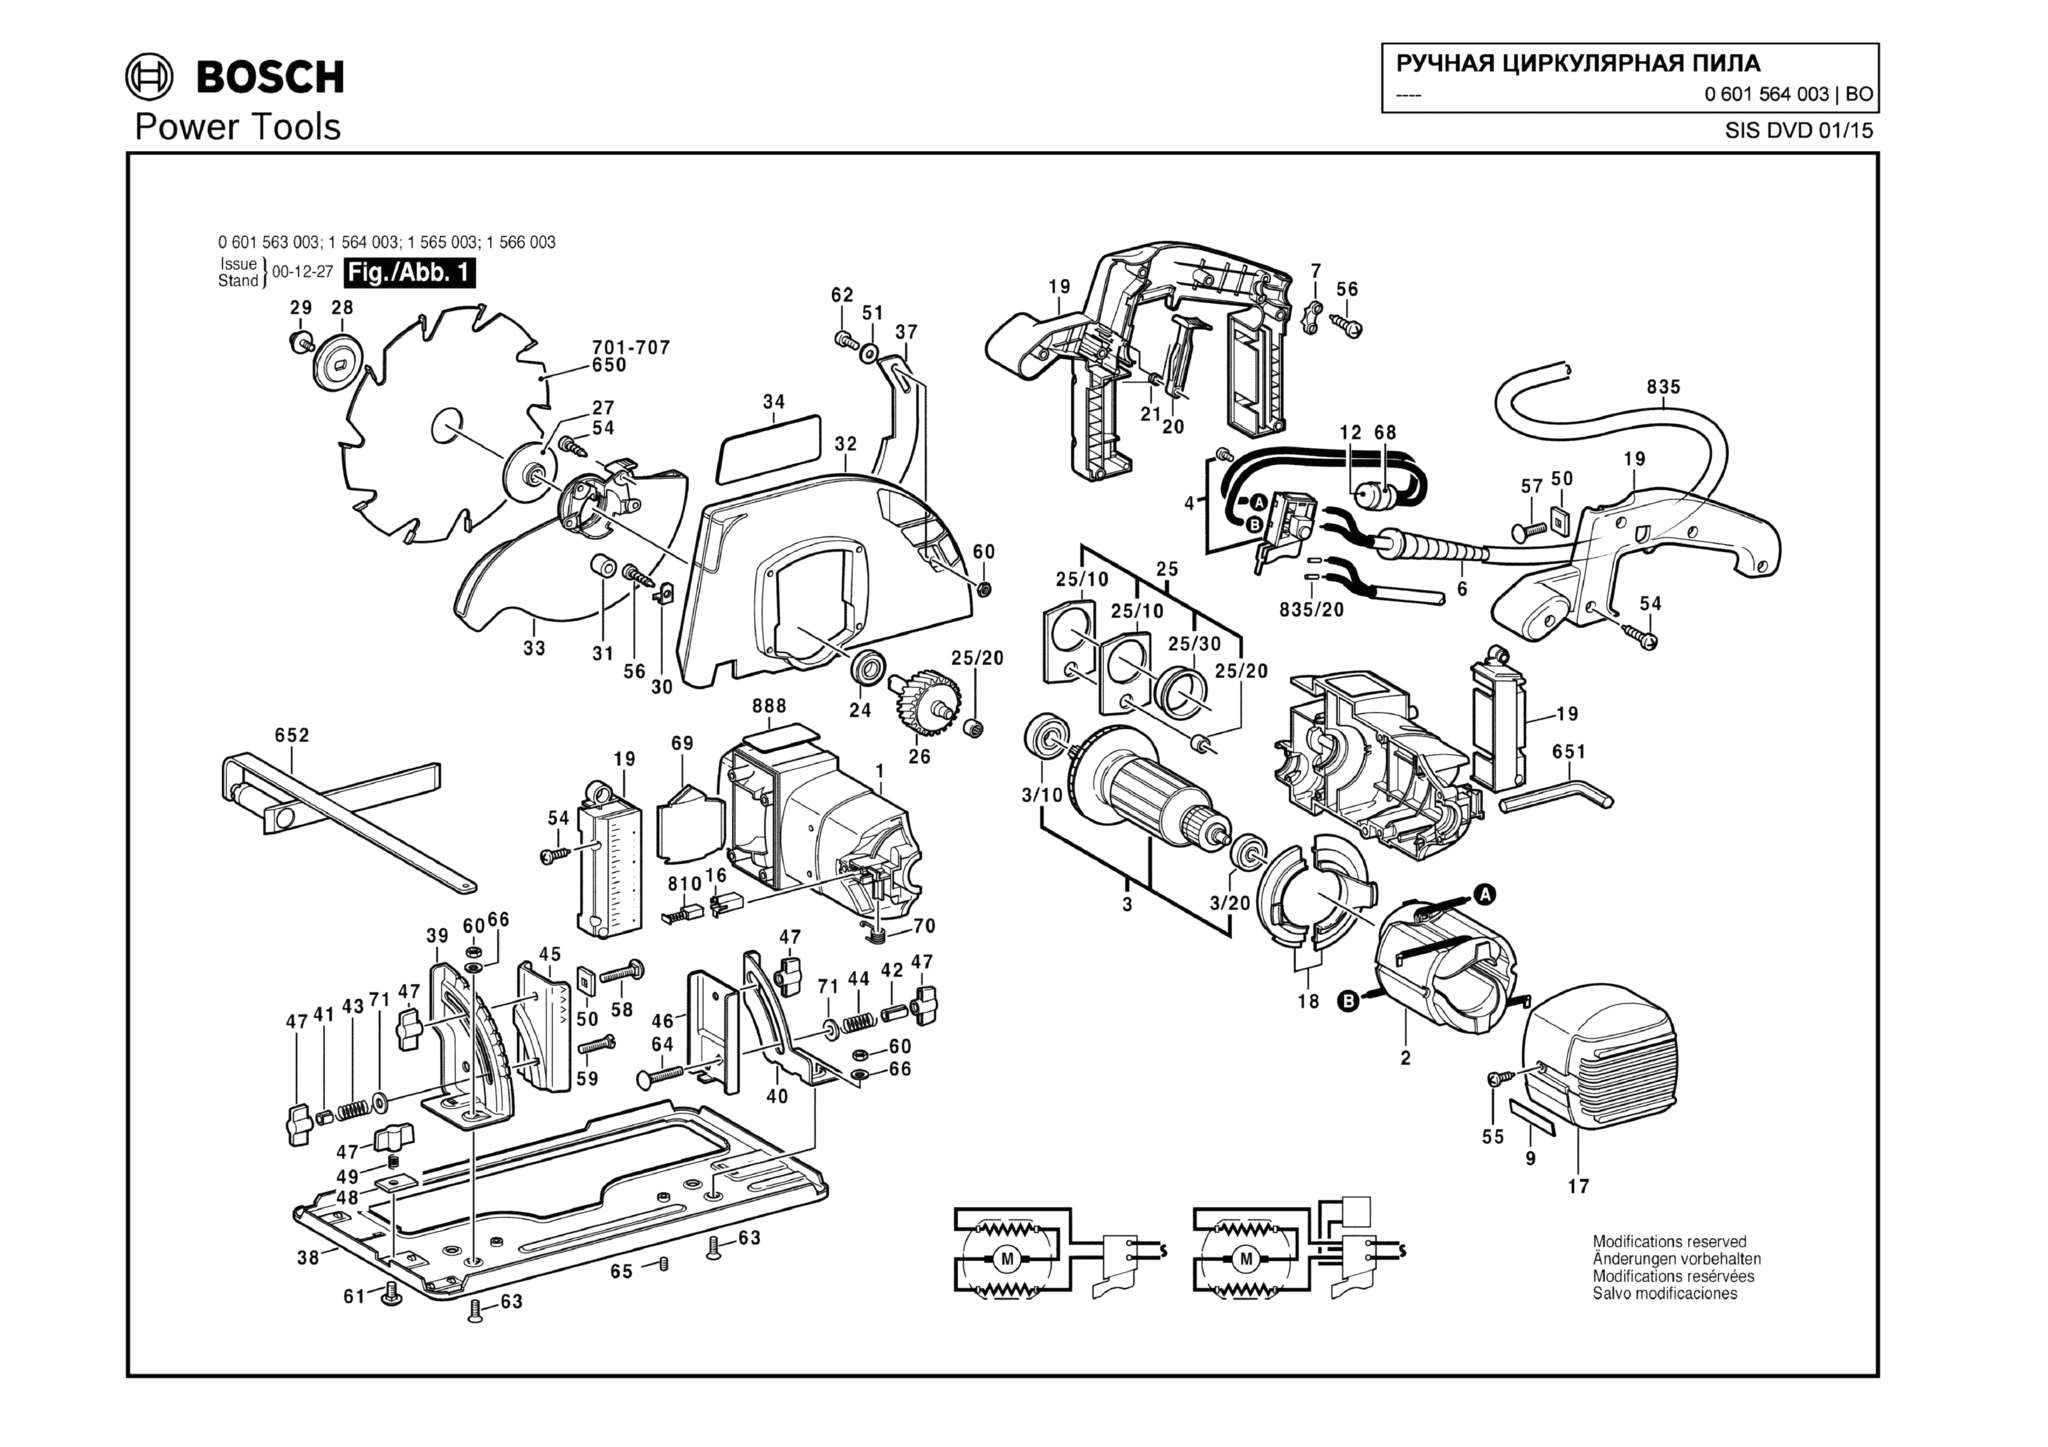 Запчасти, схема и деталировка Bosch (ТИП 0601564003)